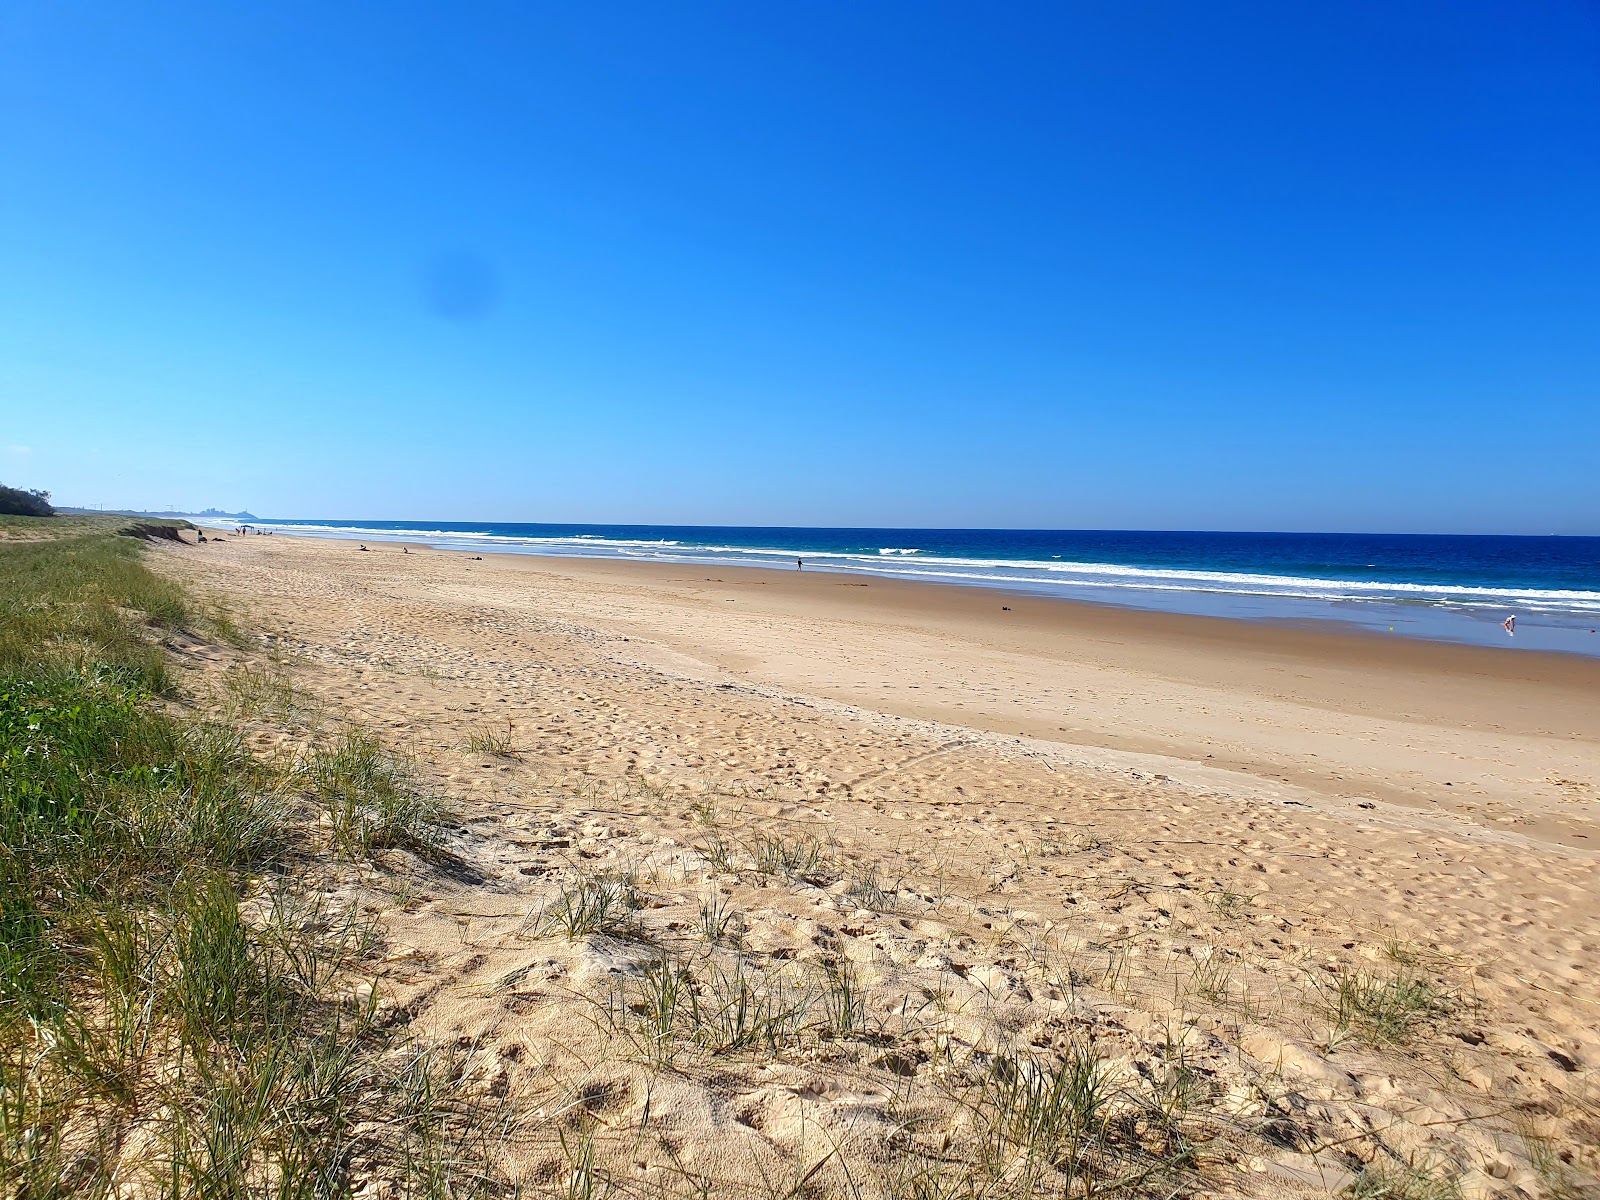 Foto de Wurtulla Beach com areia brilhante superfície